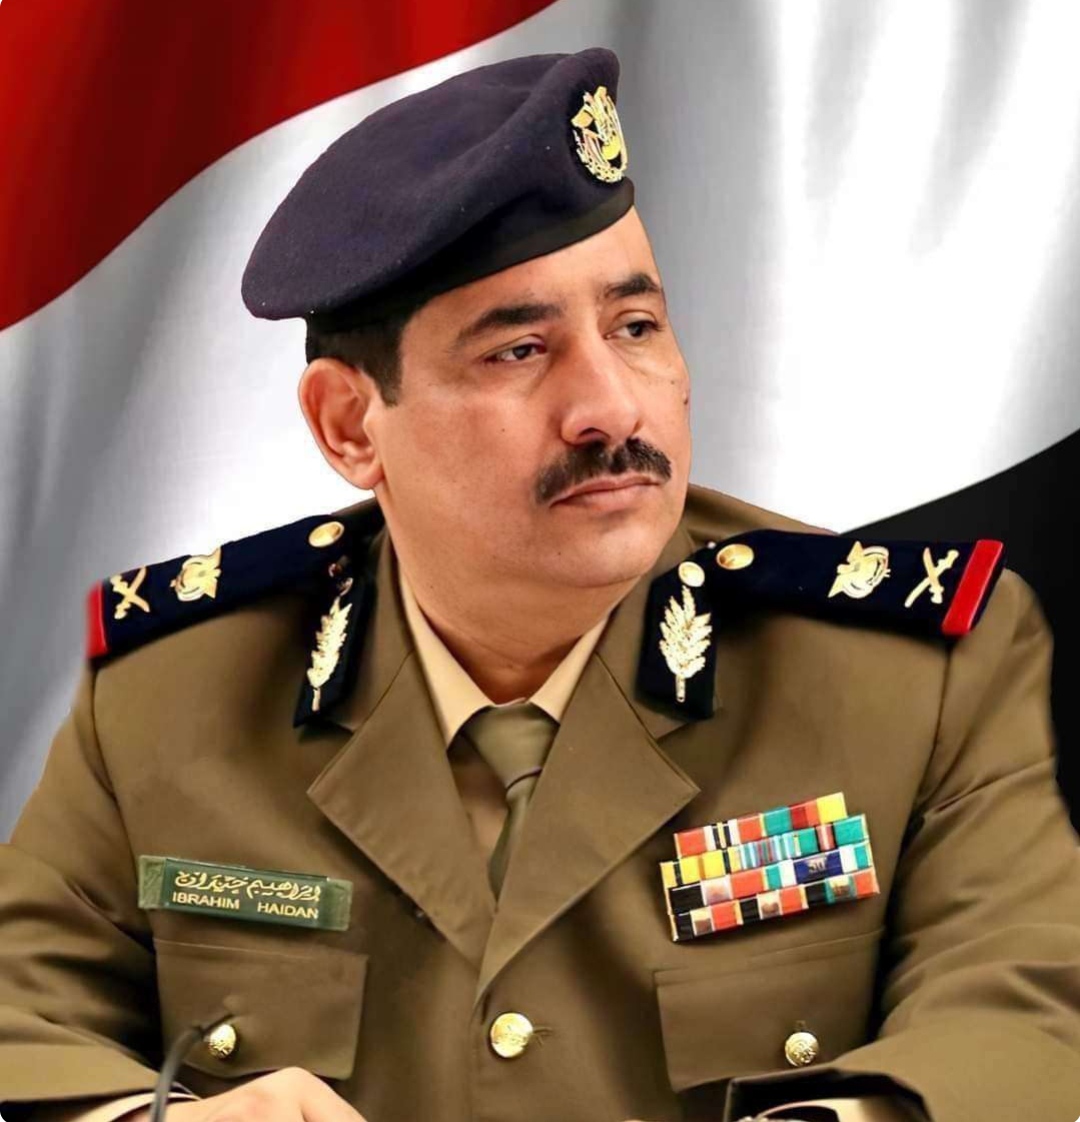 وزير الداخلية يشيد بجهود الاجهزة الأمنية بمحافظة شبوة